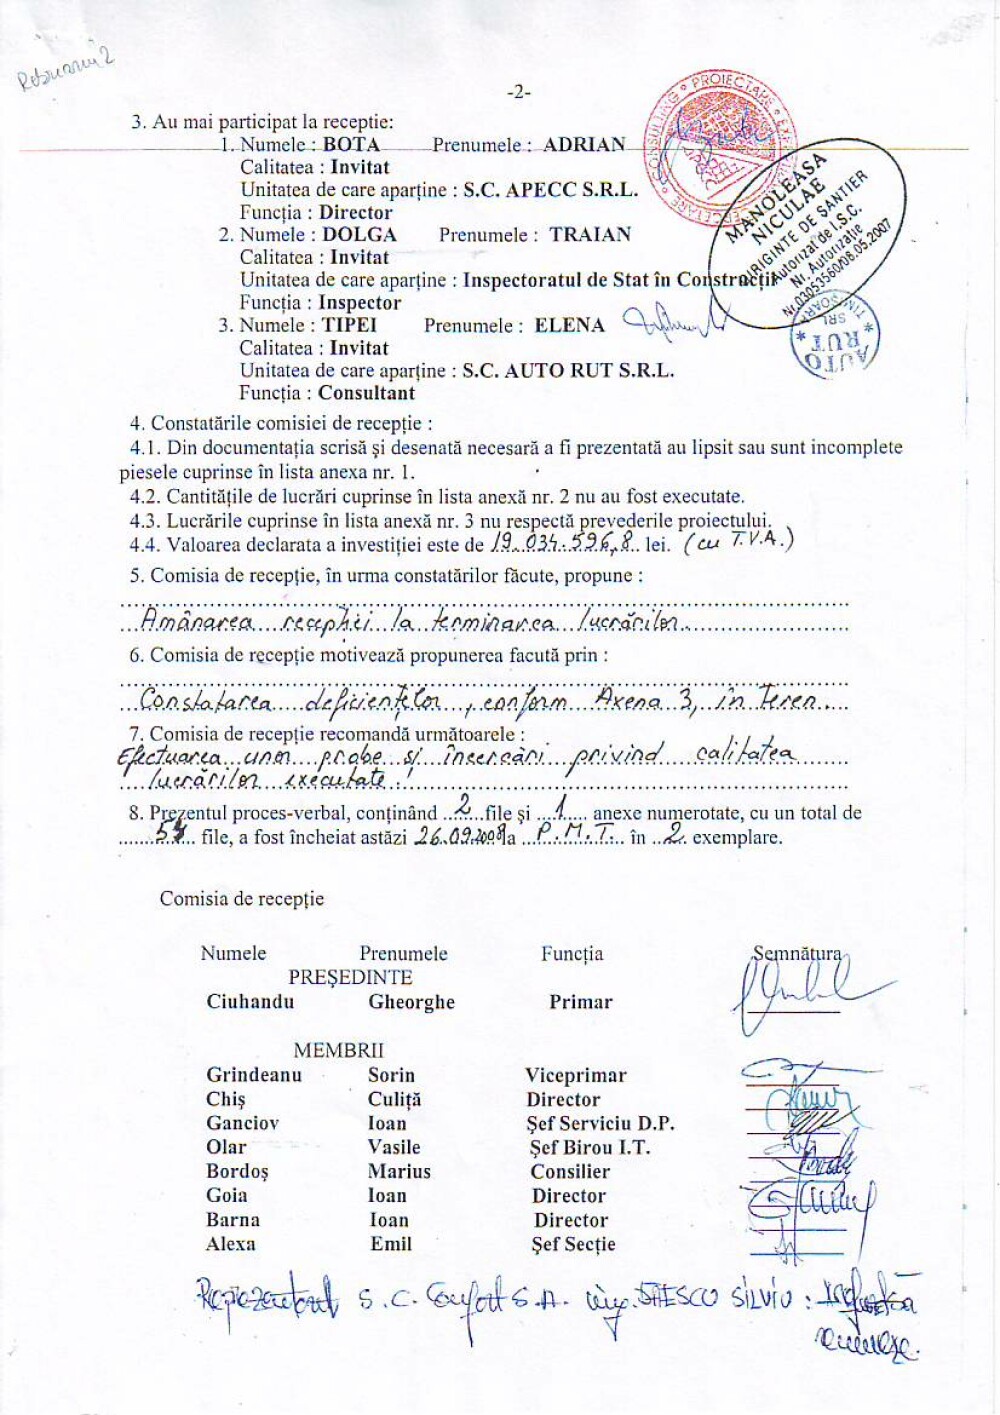 Explicatiile Primariei Timisoara: cum au fost falsificate sapte semnaturi pe documente oficiale - Imaginea 4